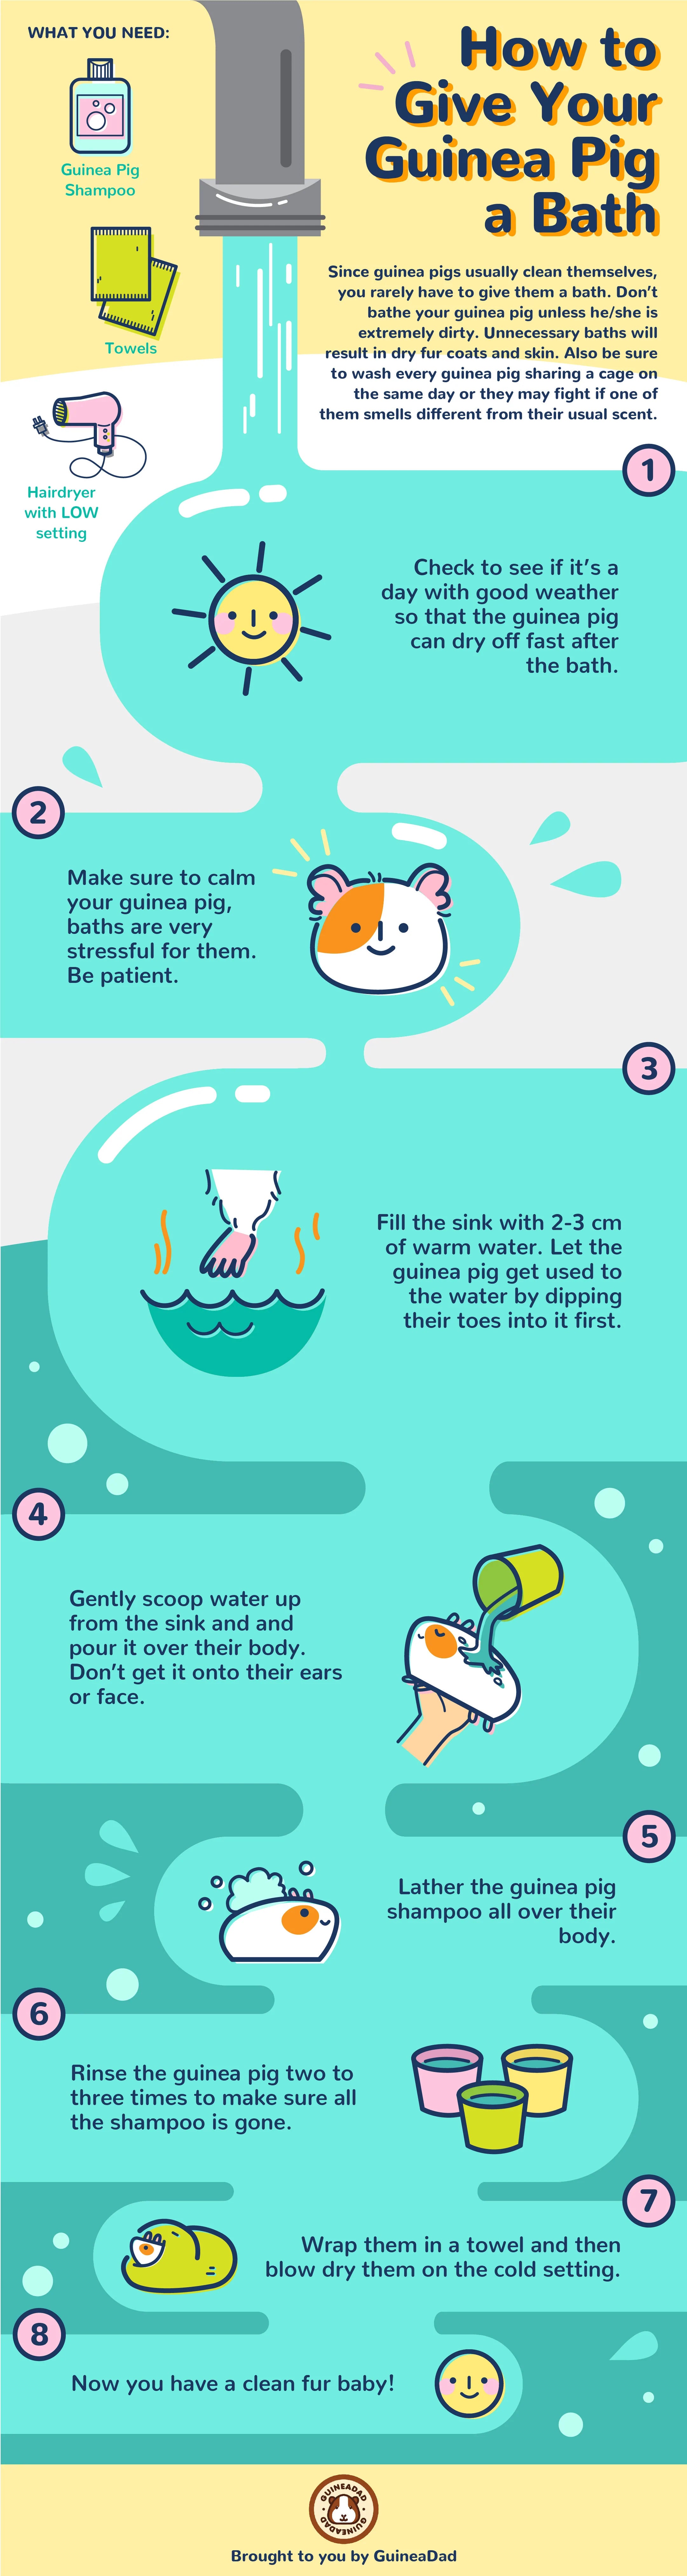 how to bathe your guinea pig